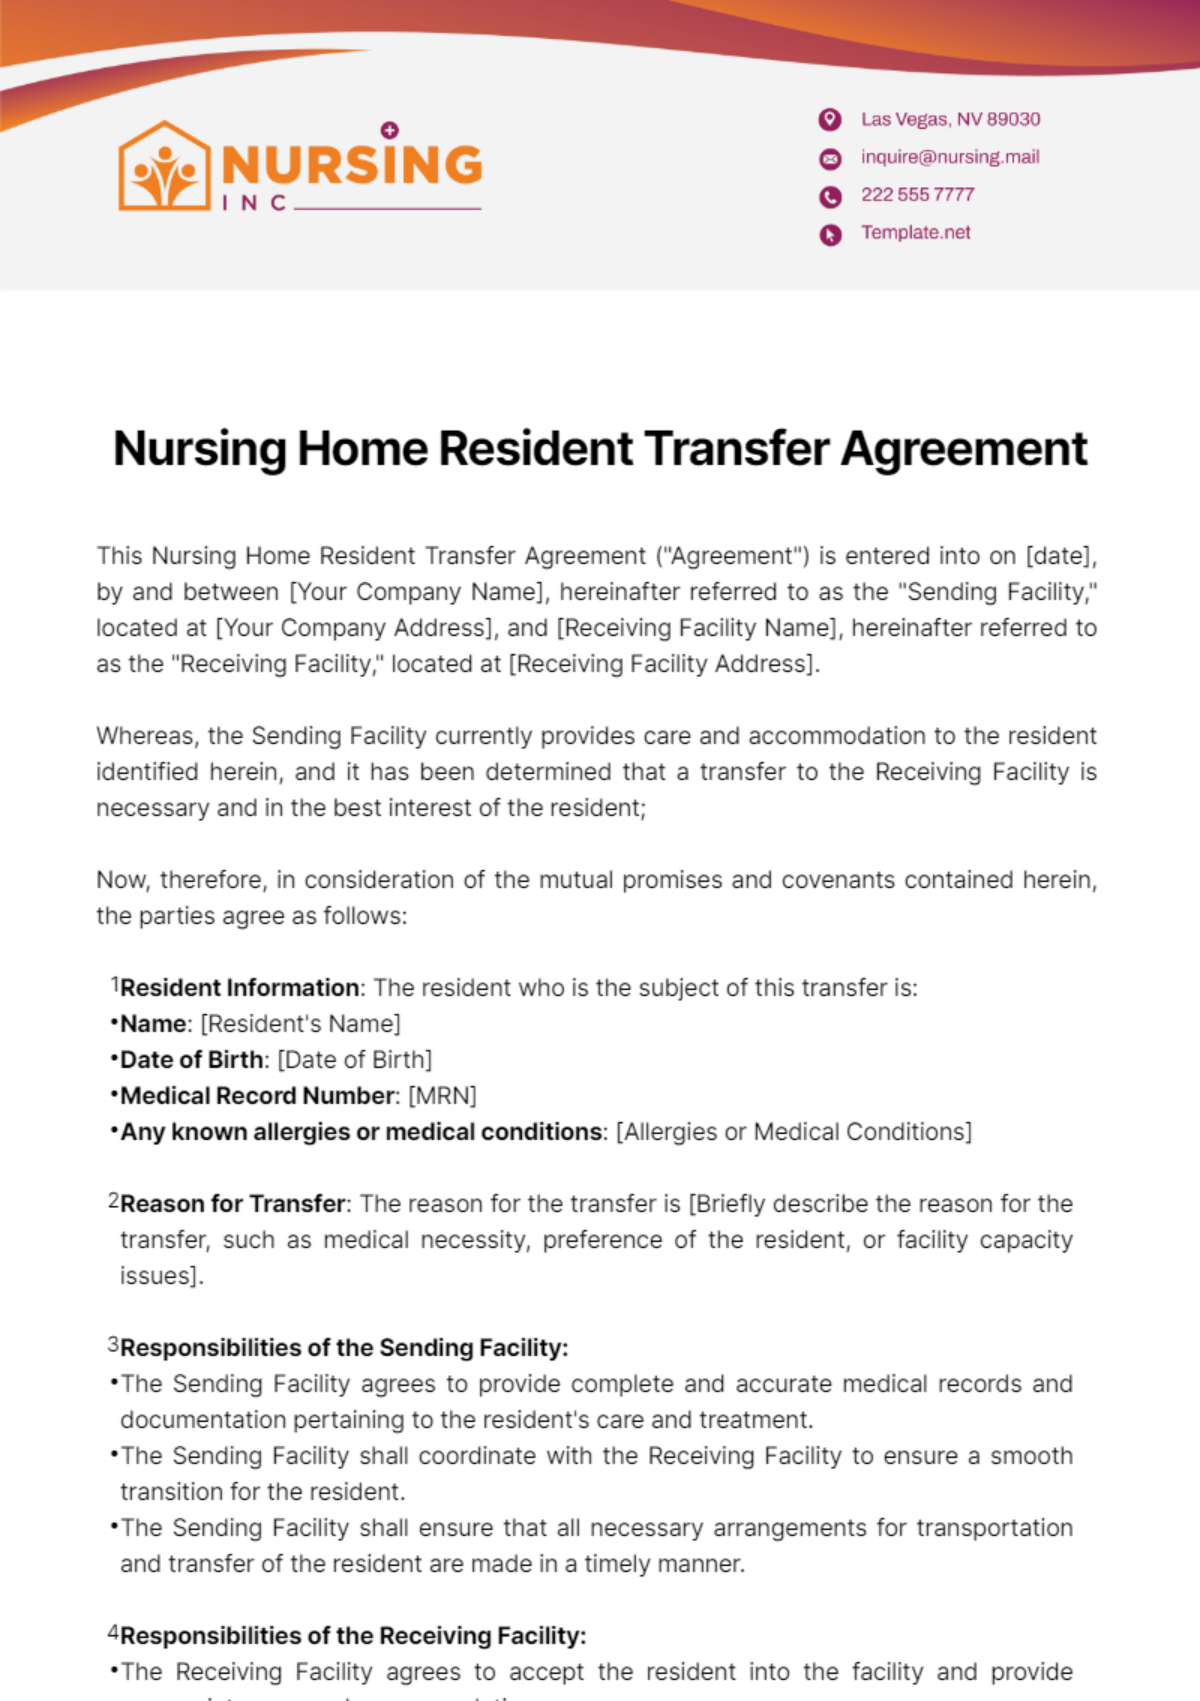 Nursing Home Resident Transfer Agreement Template